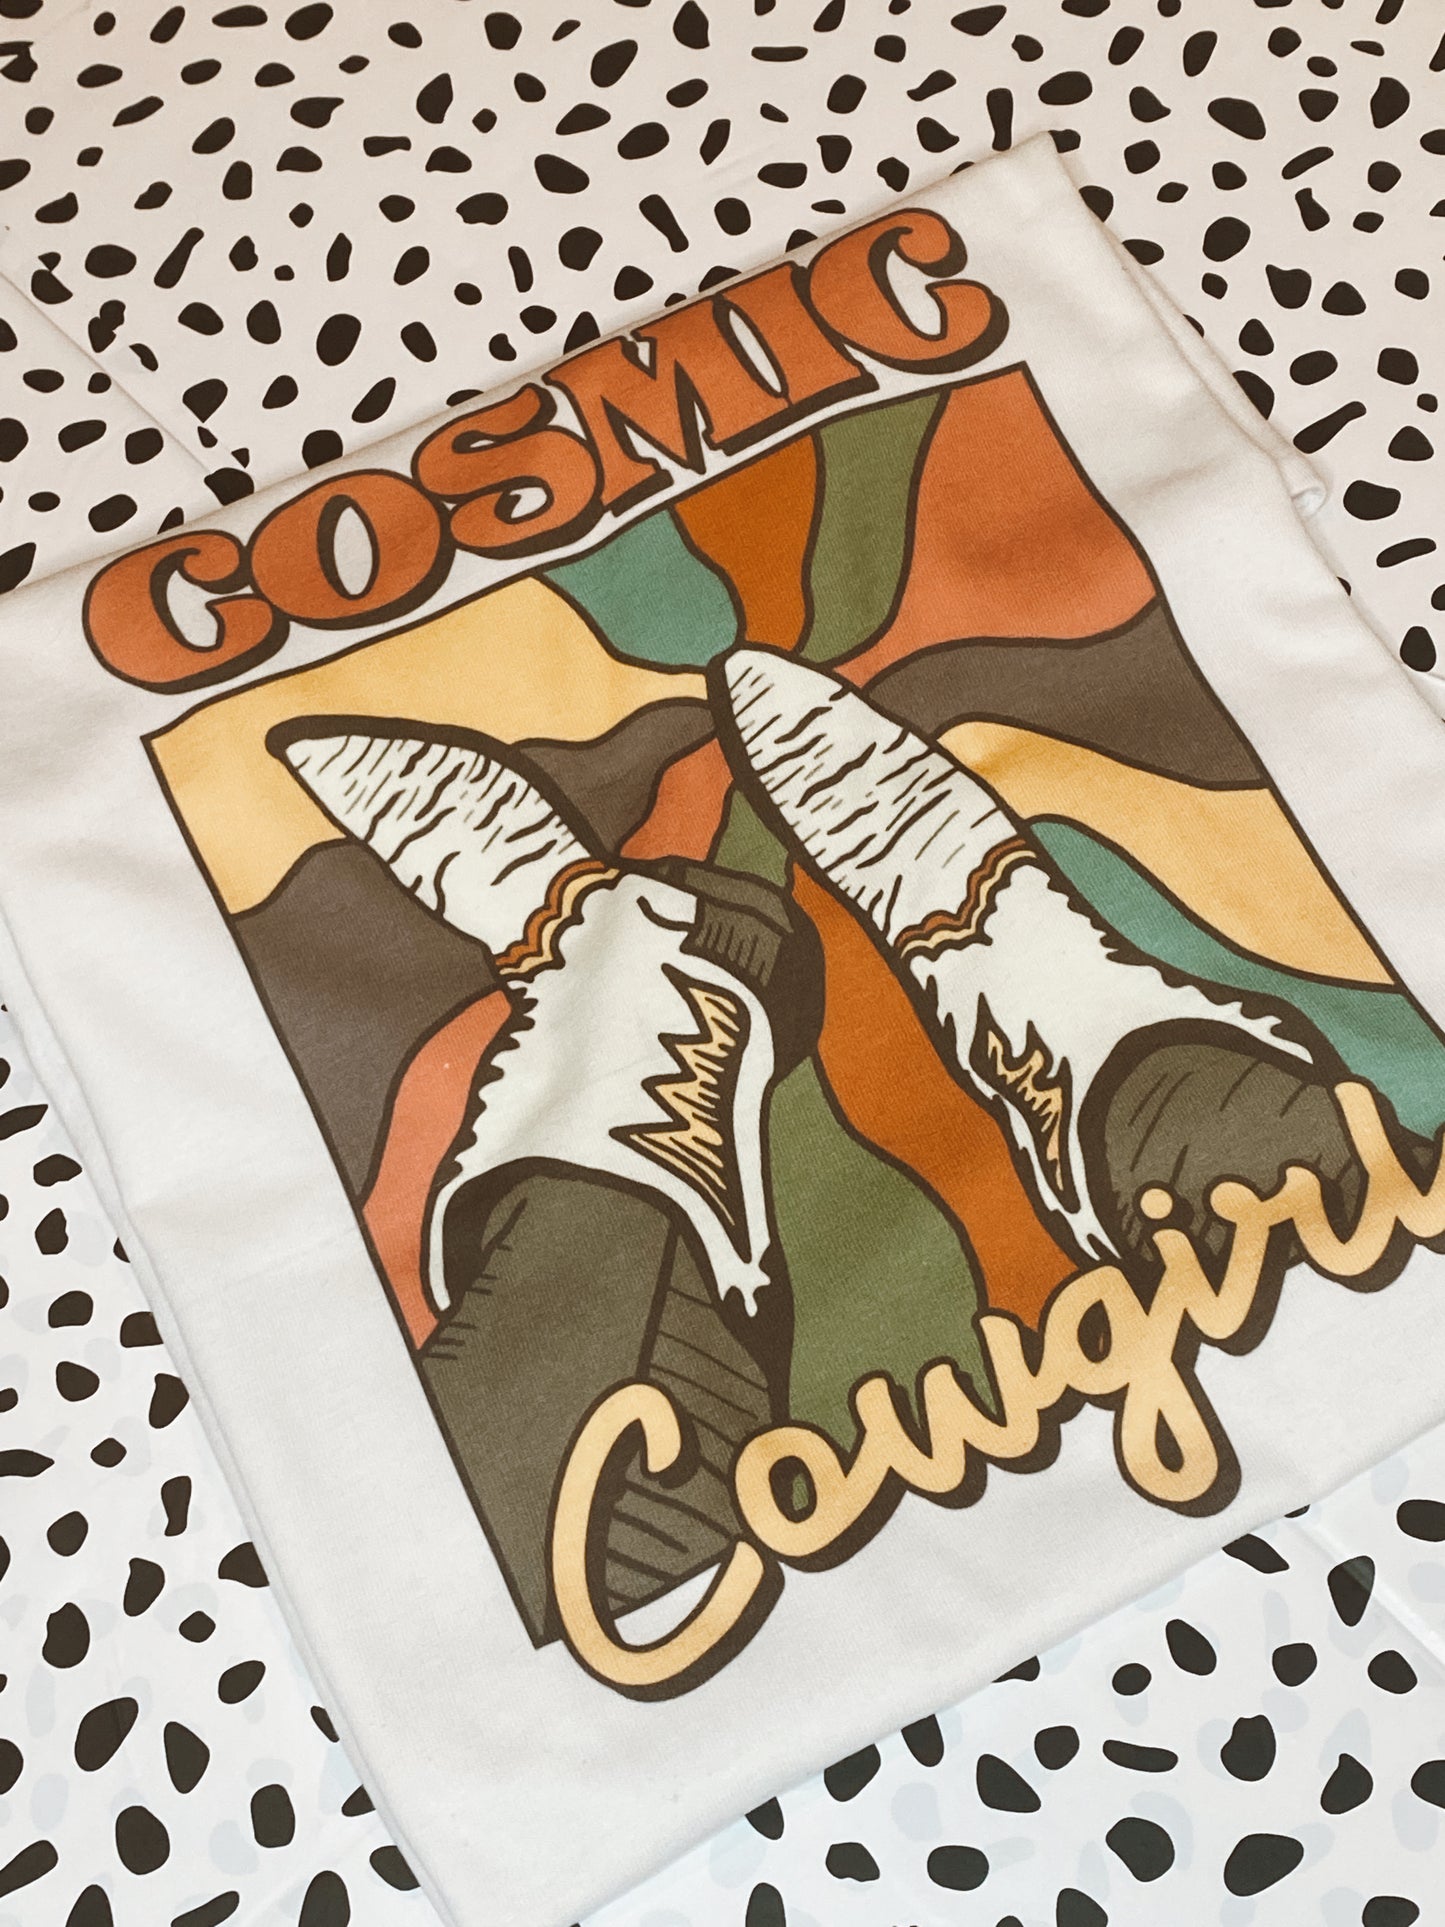 Cosmic Cowgirl